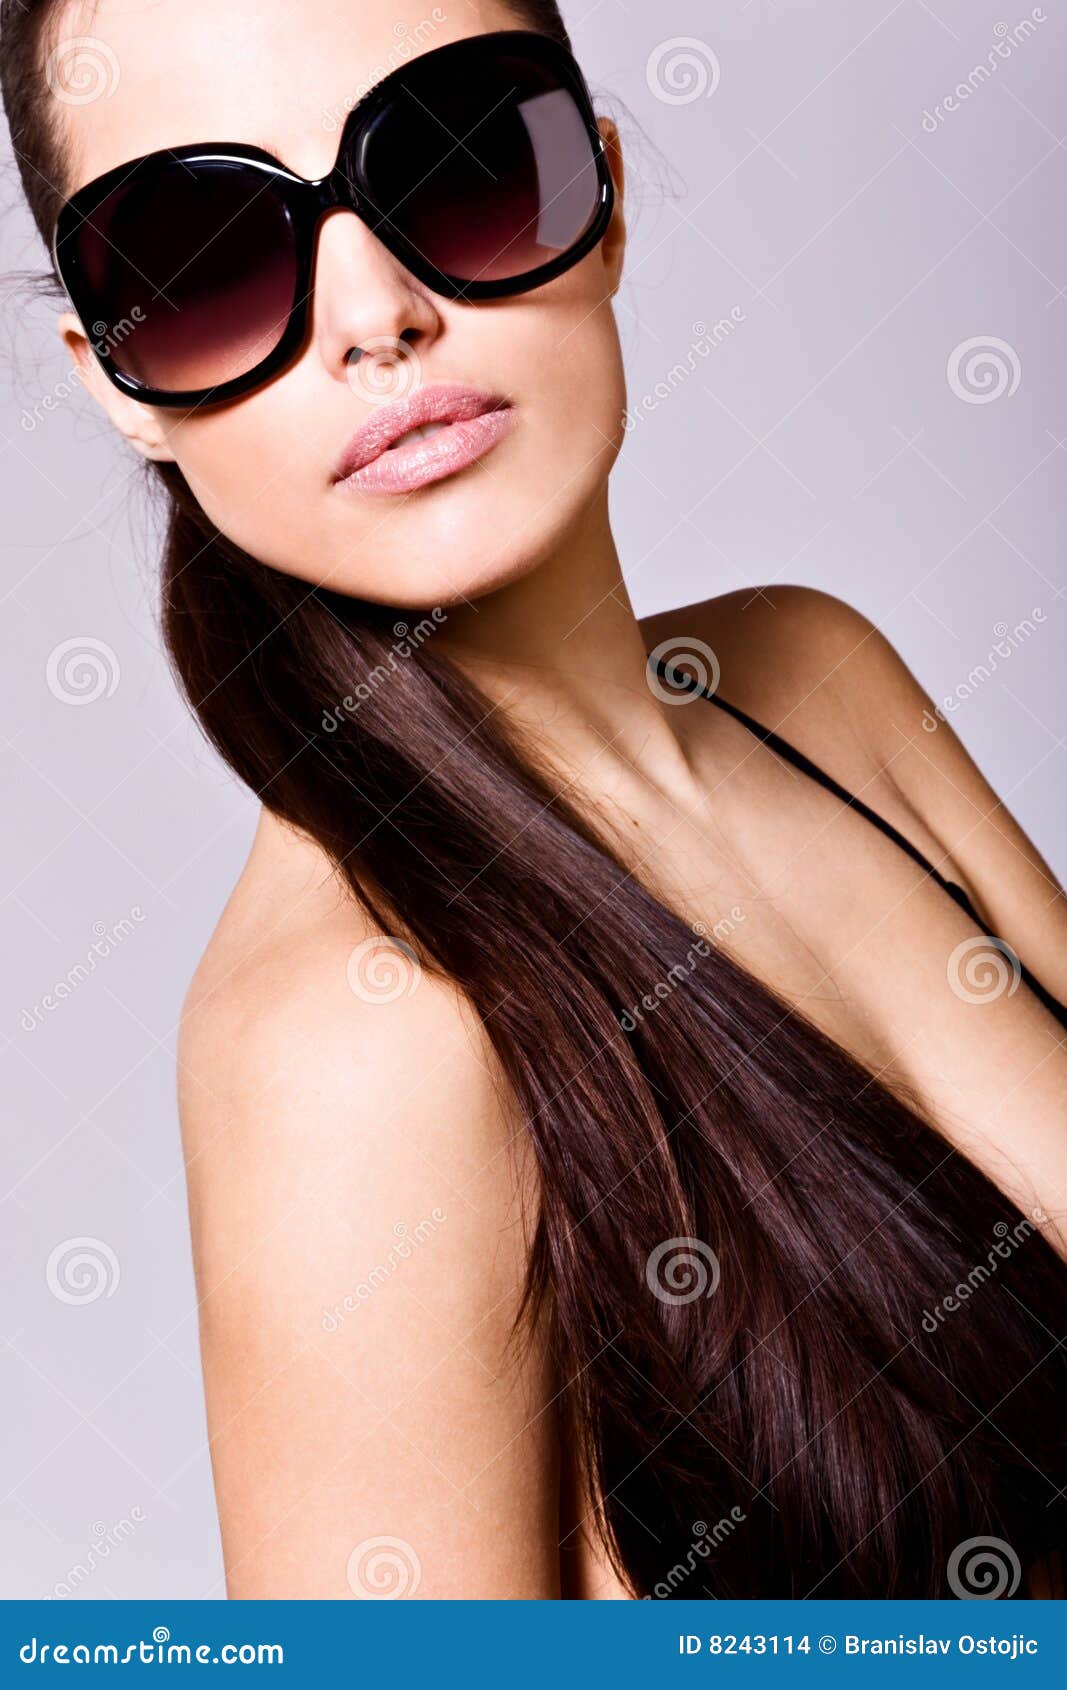 Glamorous woman stock photo. Image of beautiful, chic ...
